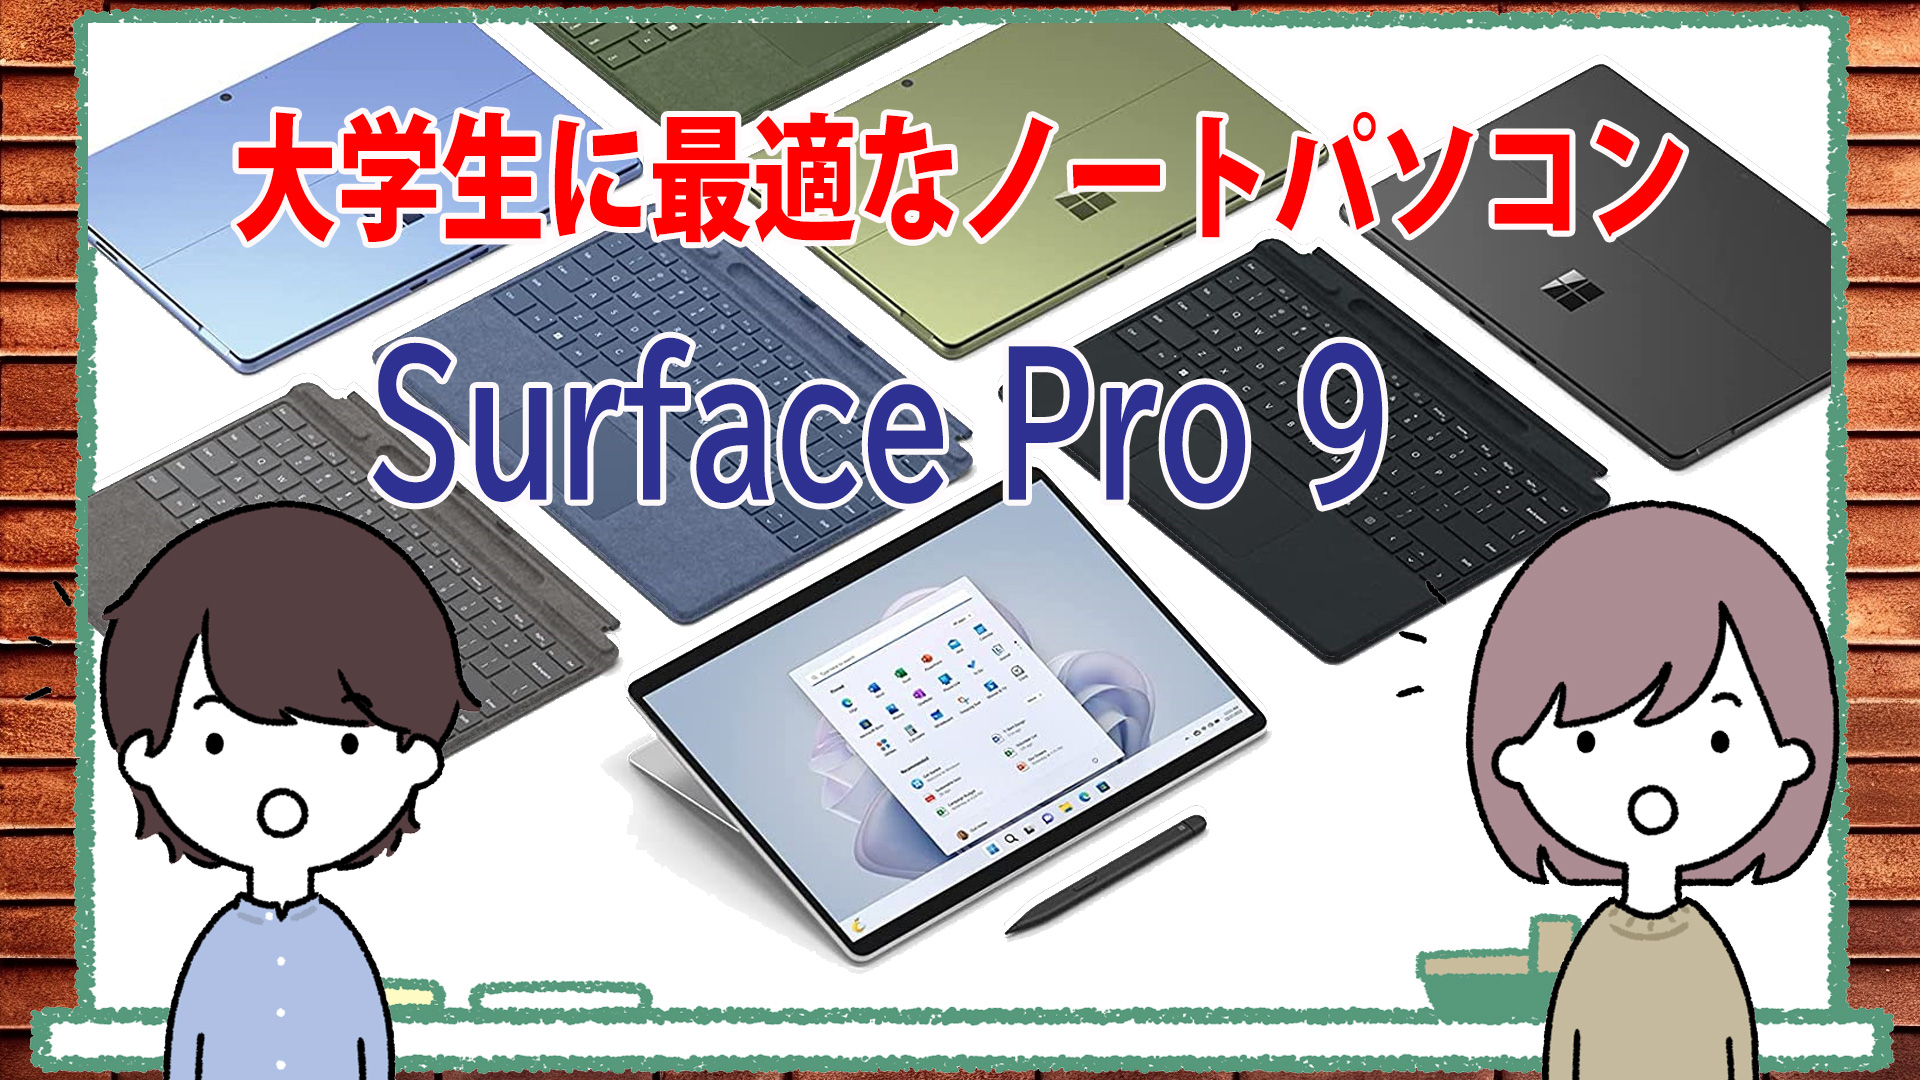 大学生に最適なノートパソコン「Surface Pro 9」